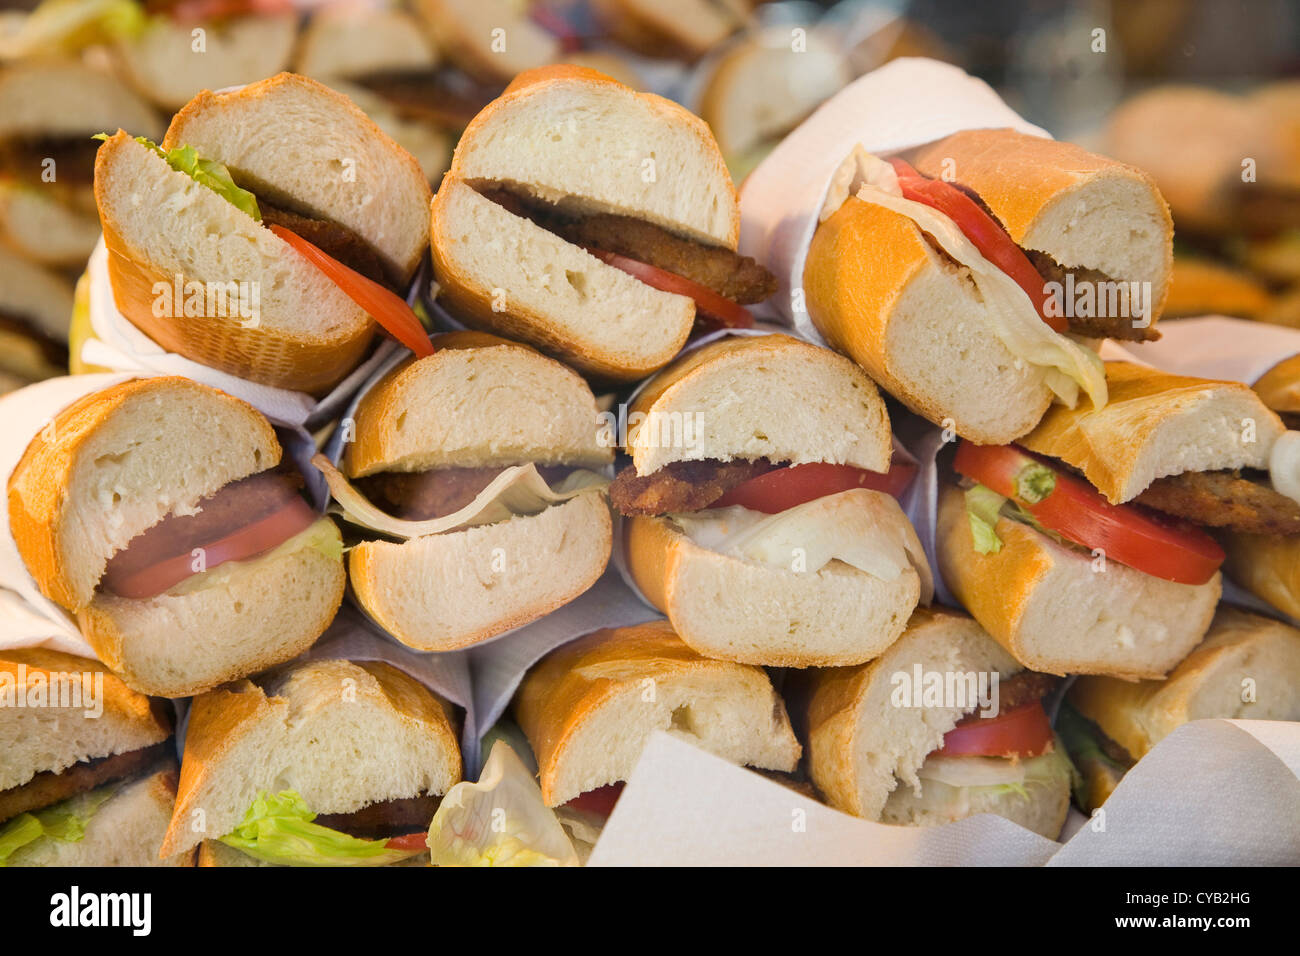 europe, switzerland, zurich, food shop, sandwich Stock Photo